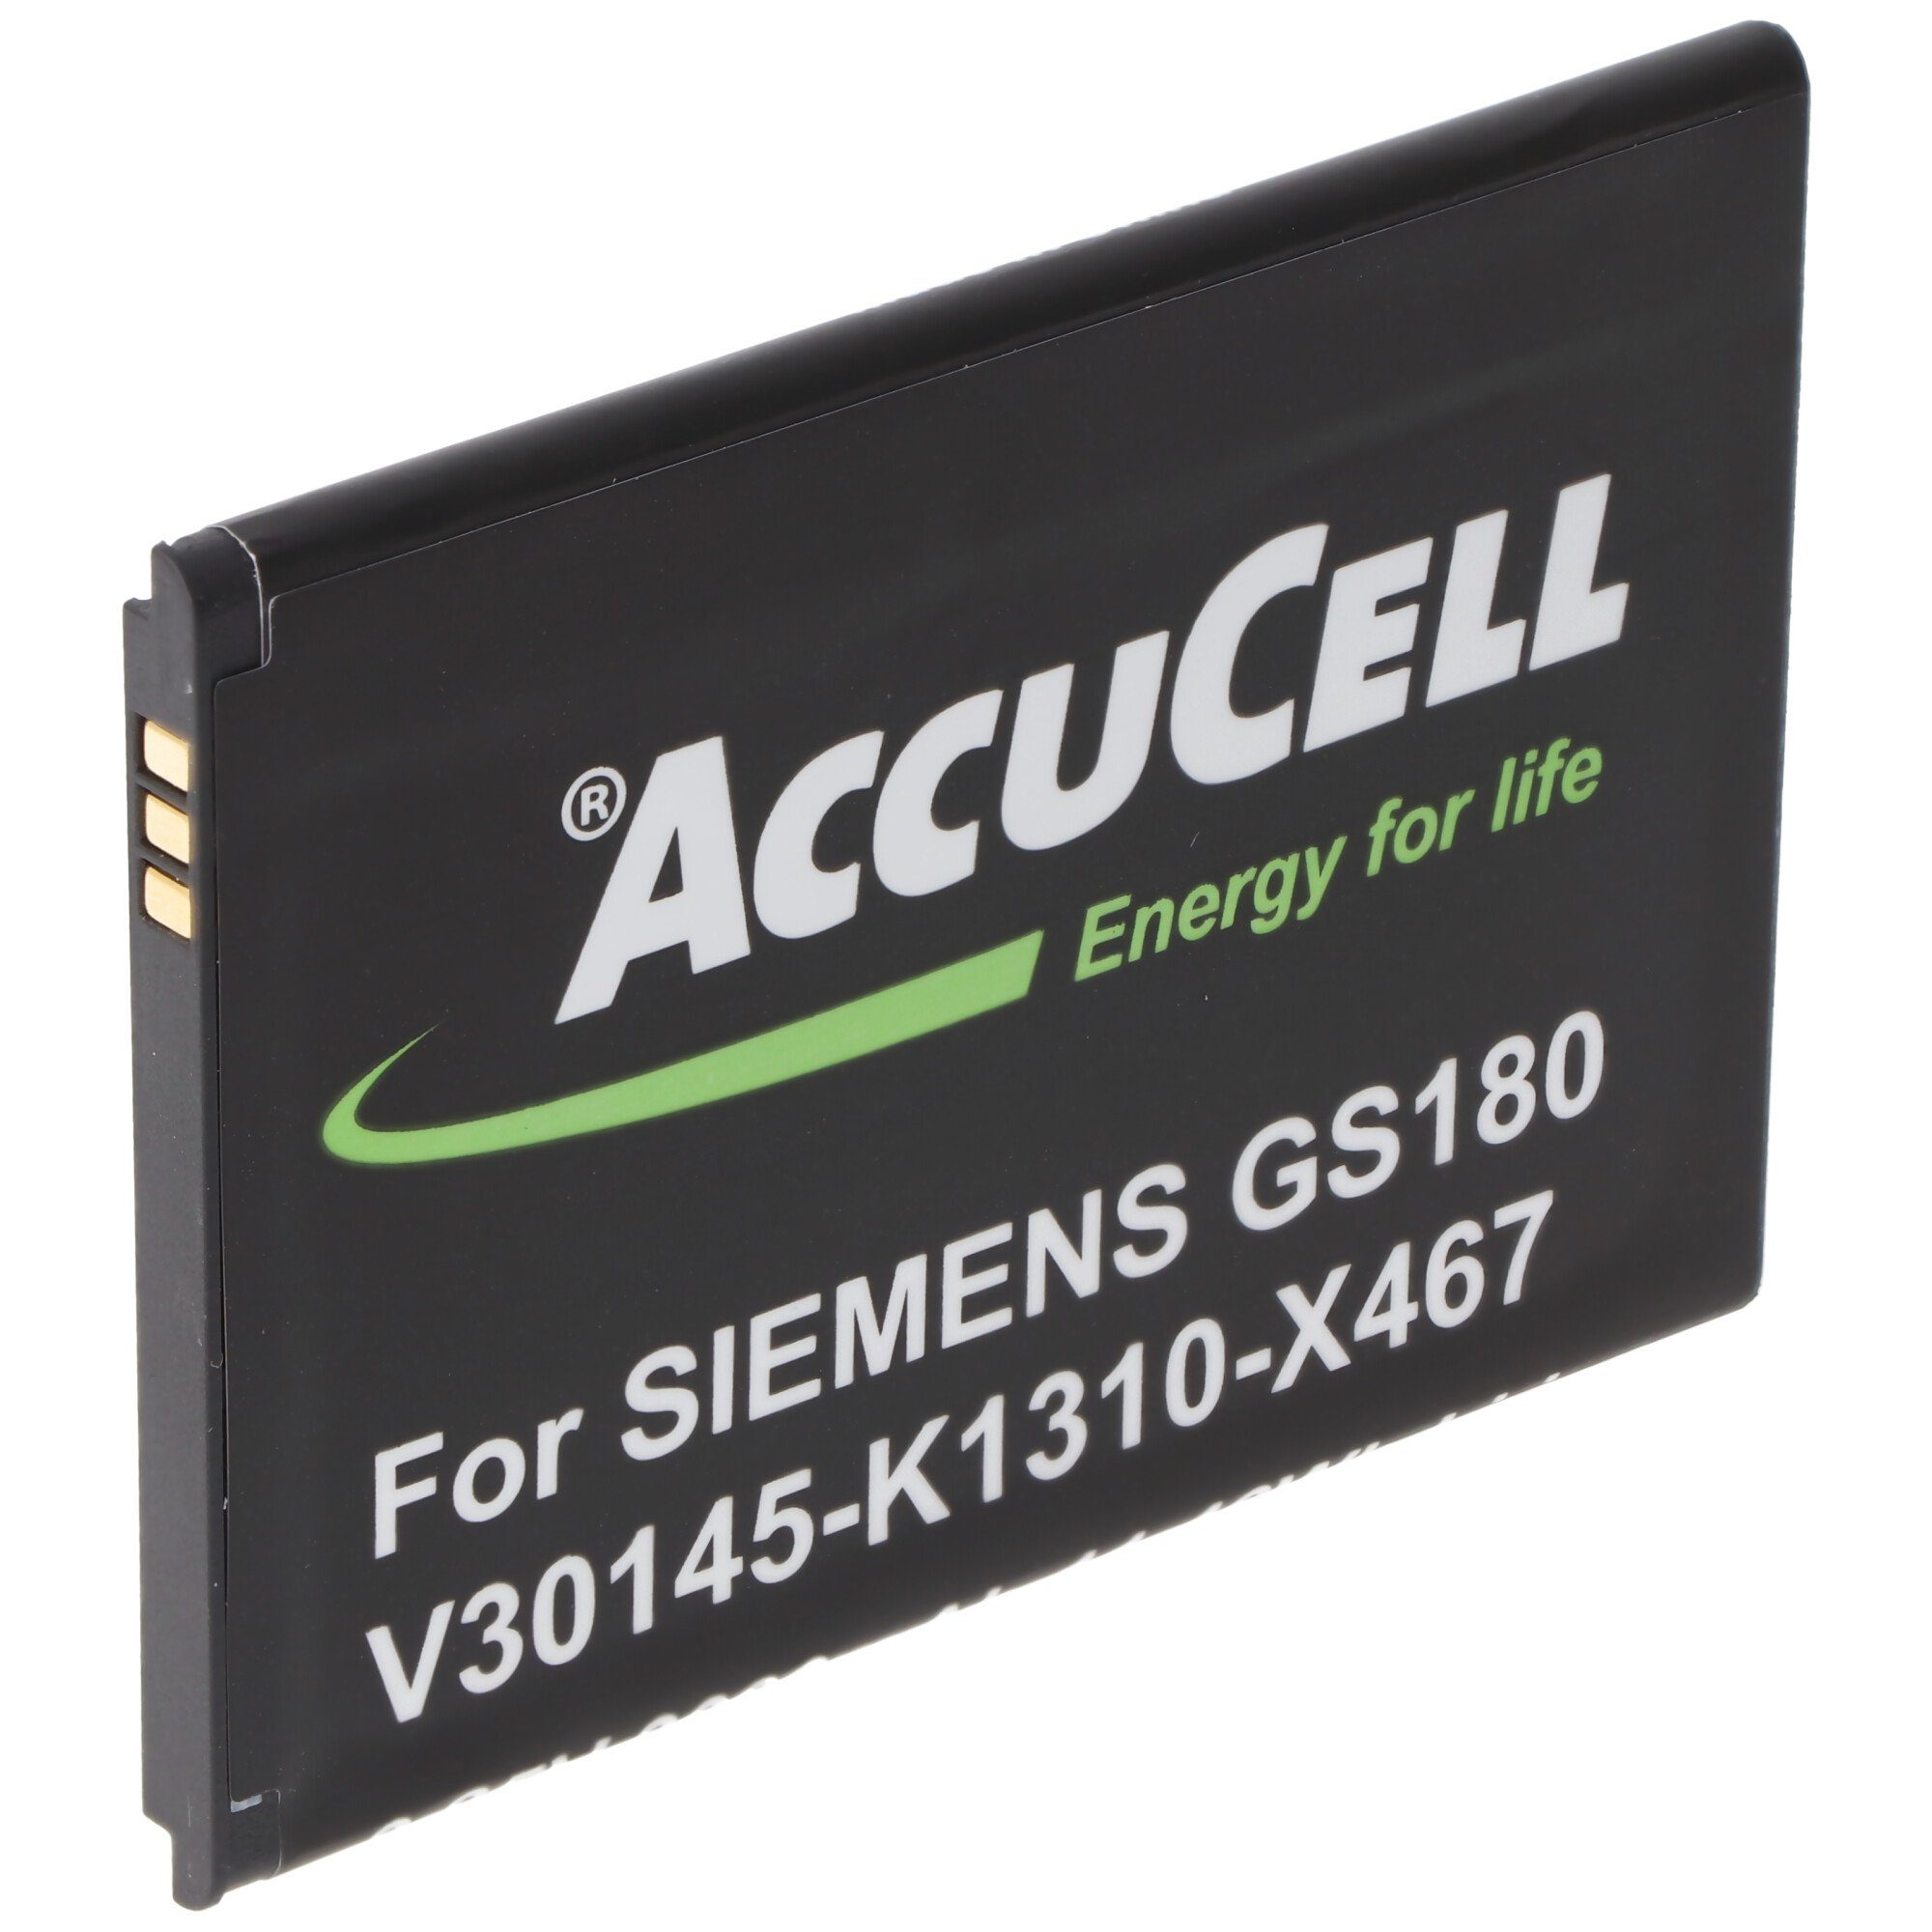 AccuCell AccuCell Akku passend Siemens Akku Gigaset V30145-K1310-X467 mAh für 3,8 (3,8 GS180 3000 V)